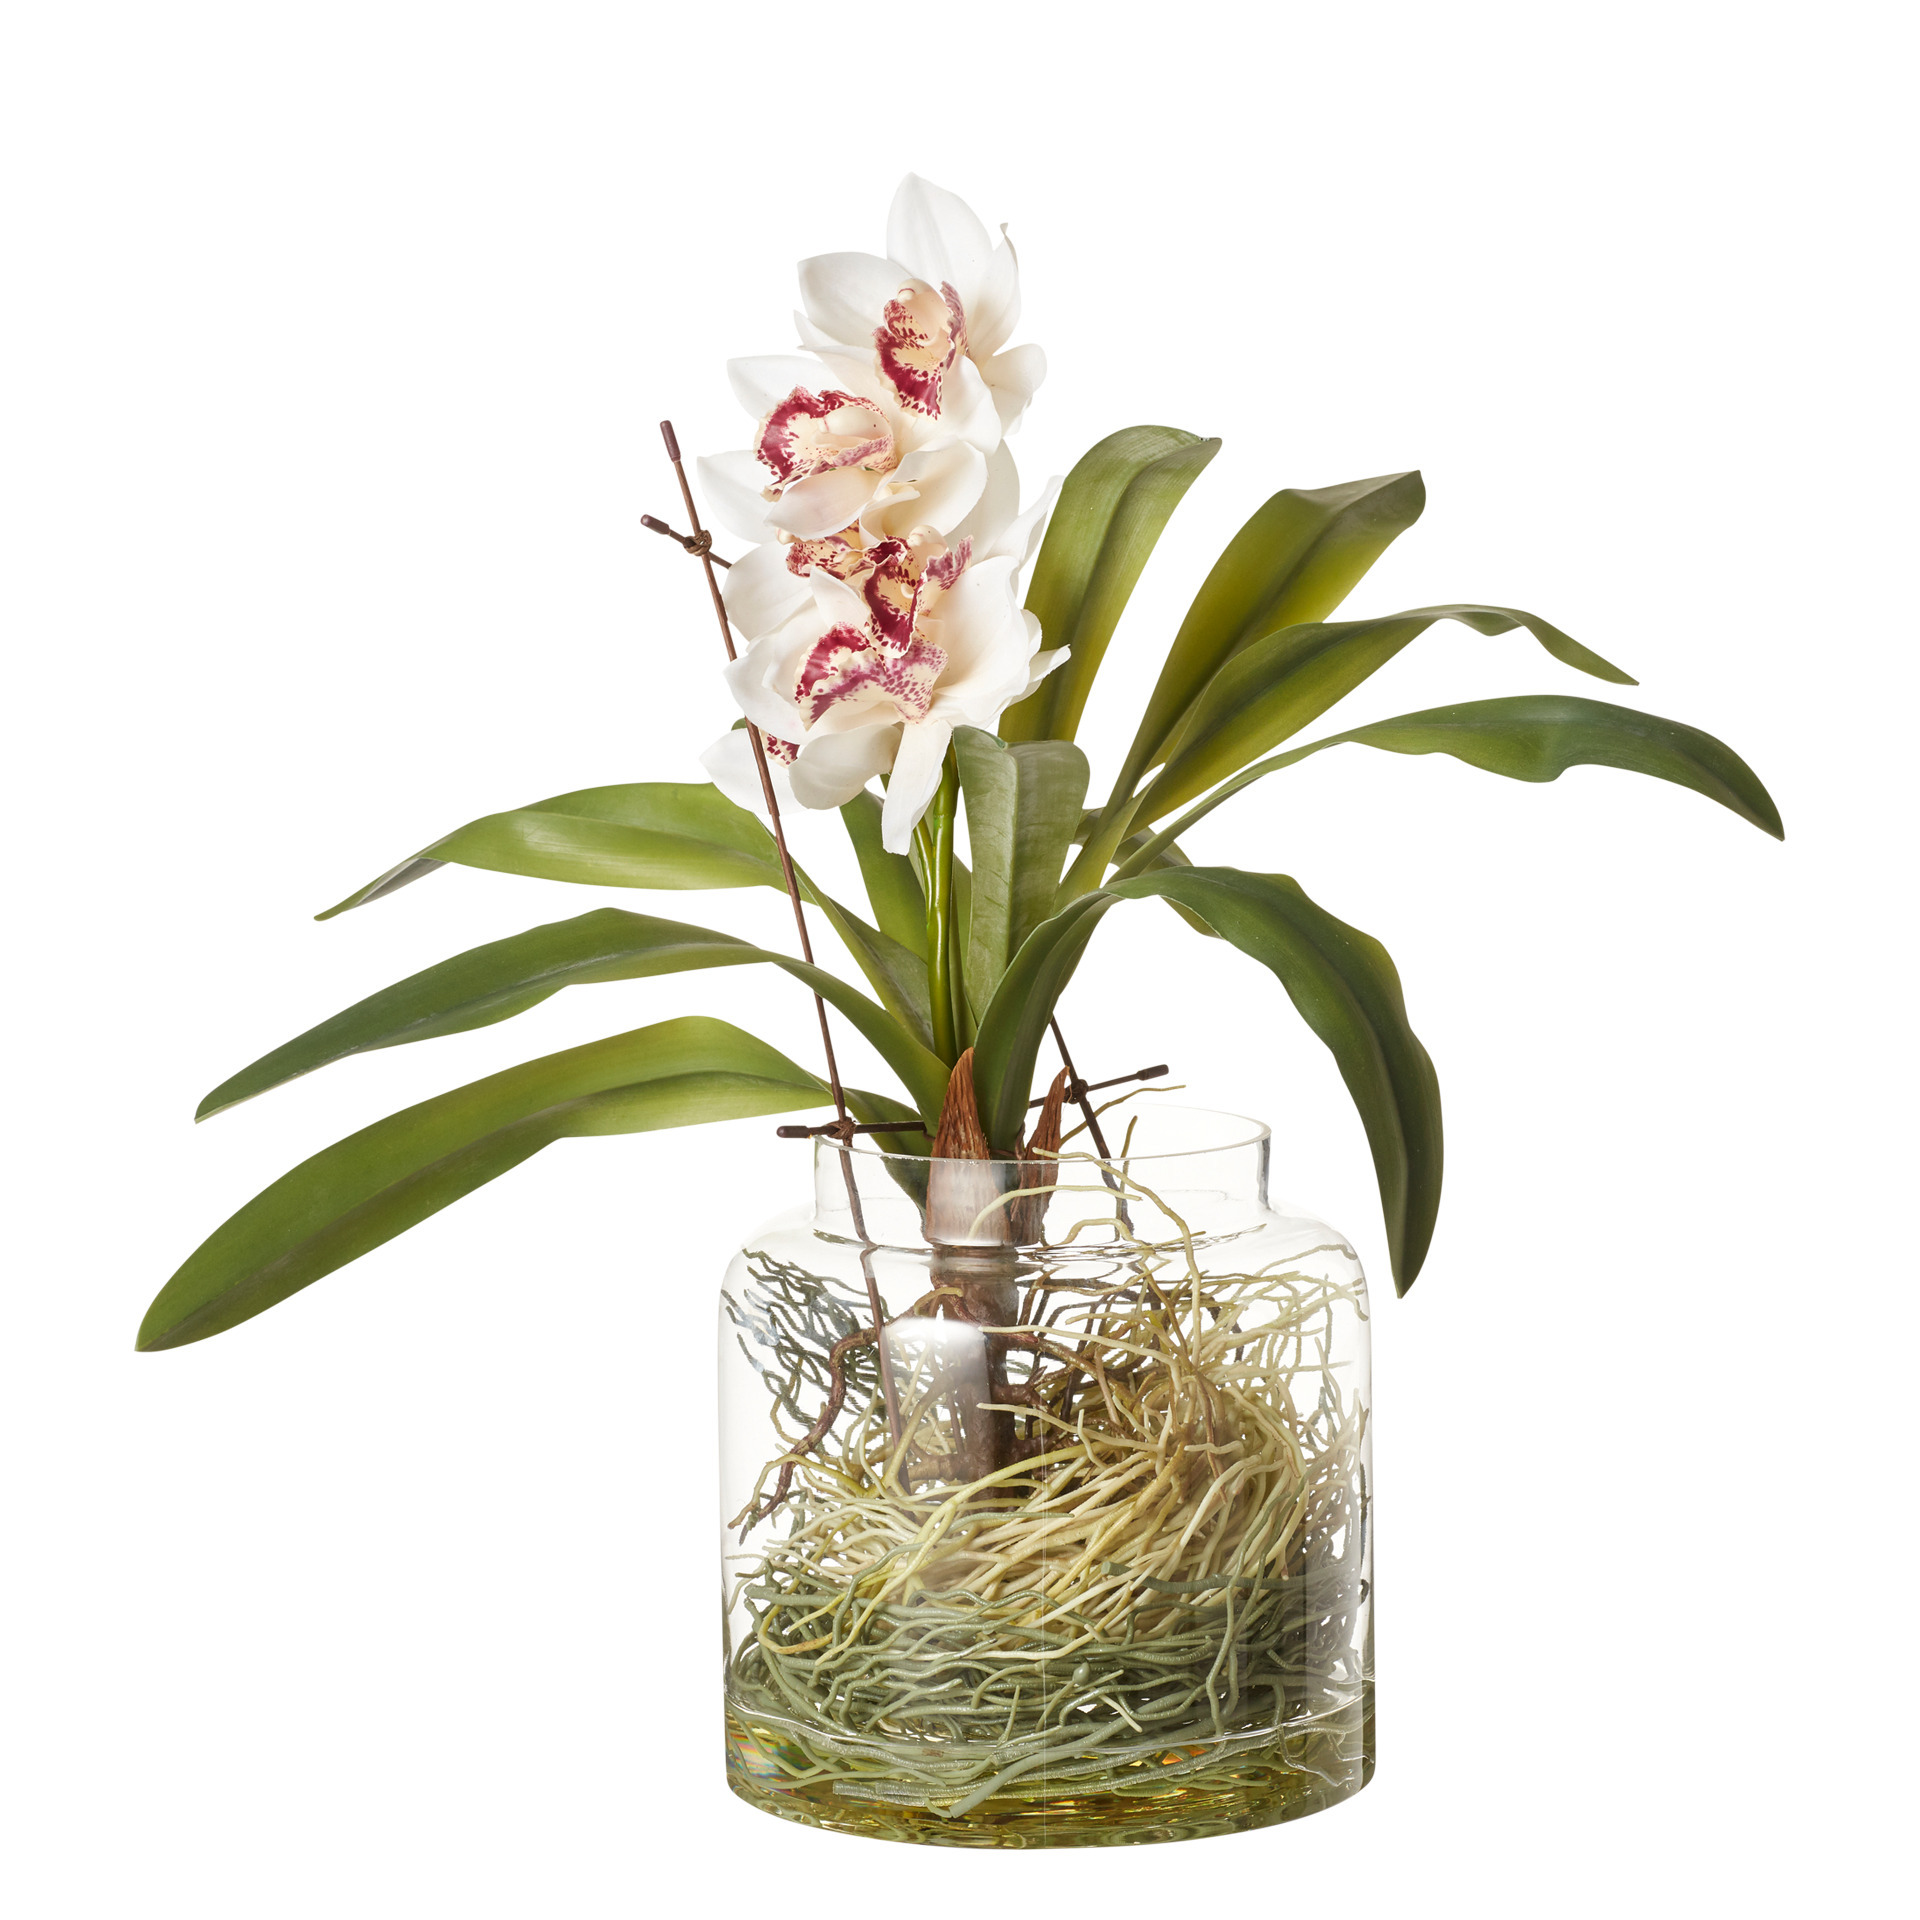 Faux Cymbidium Orchids with Vase - Cream